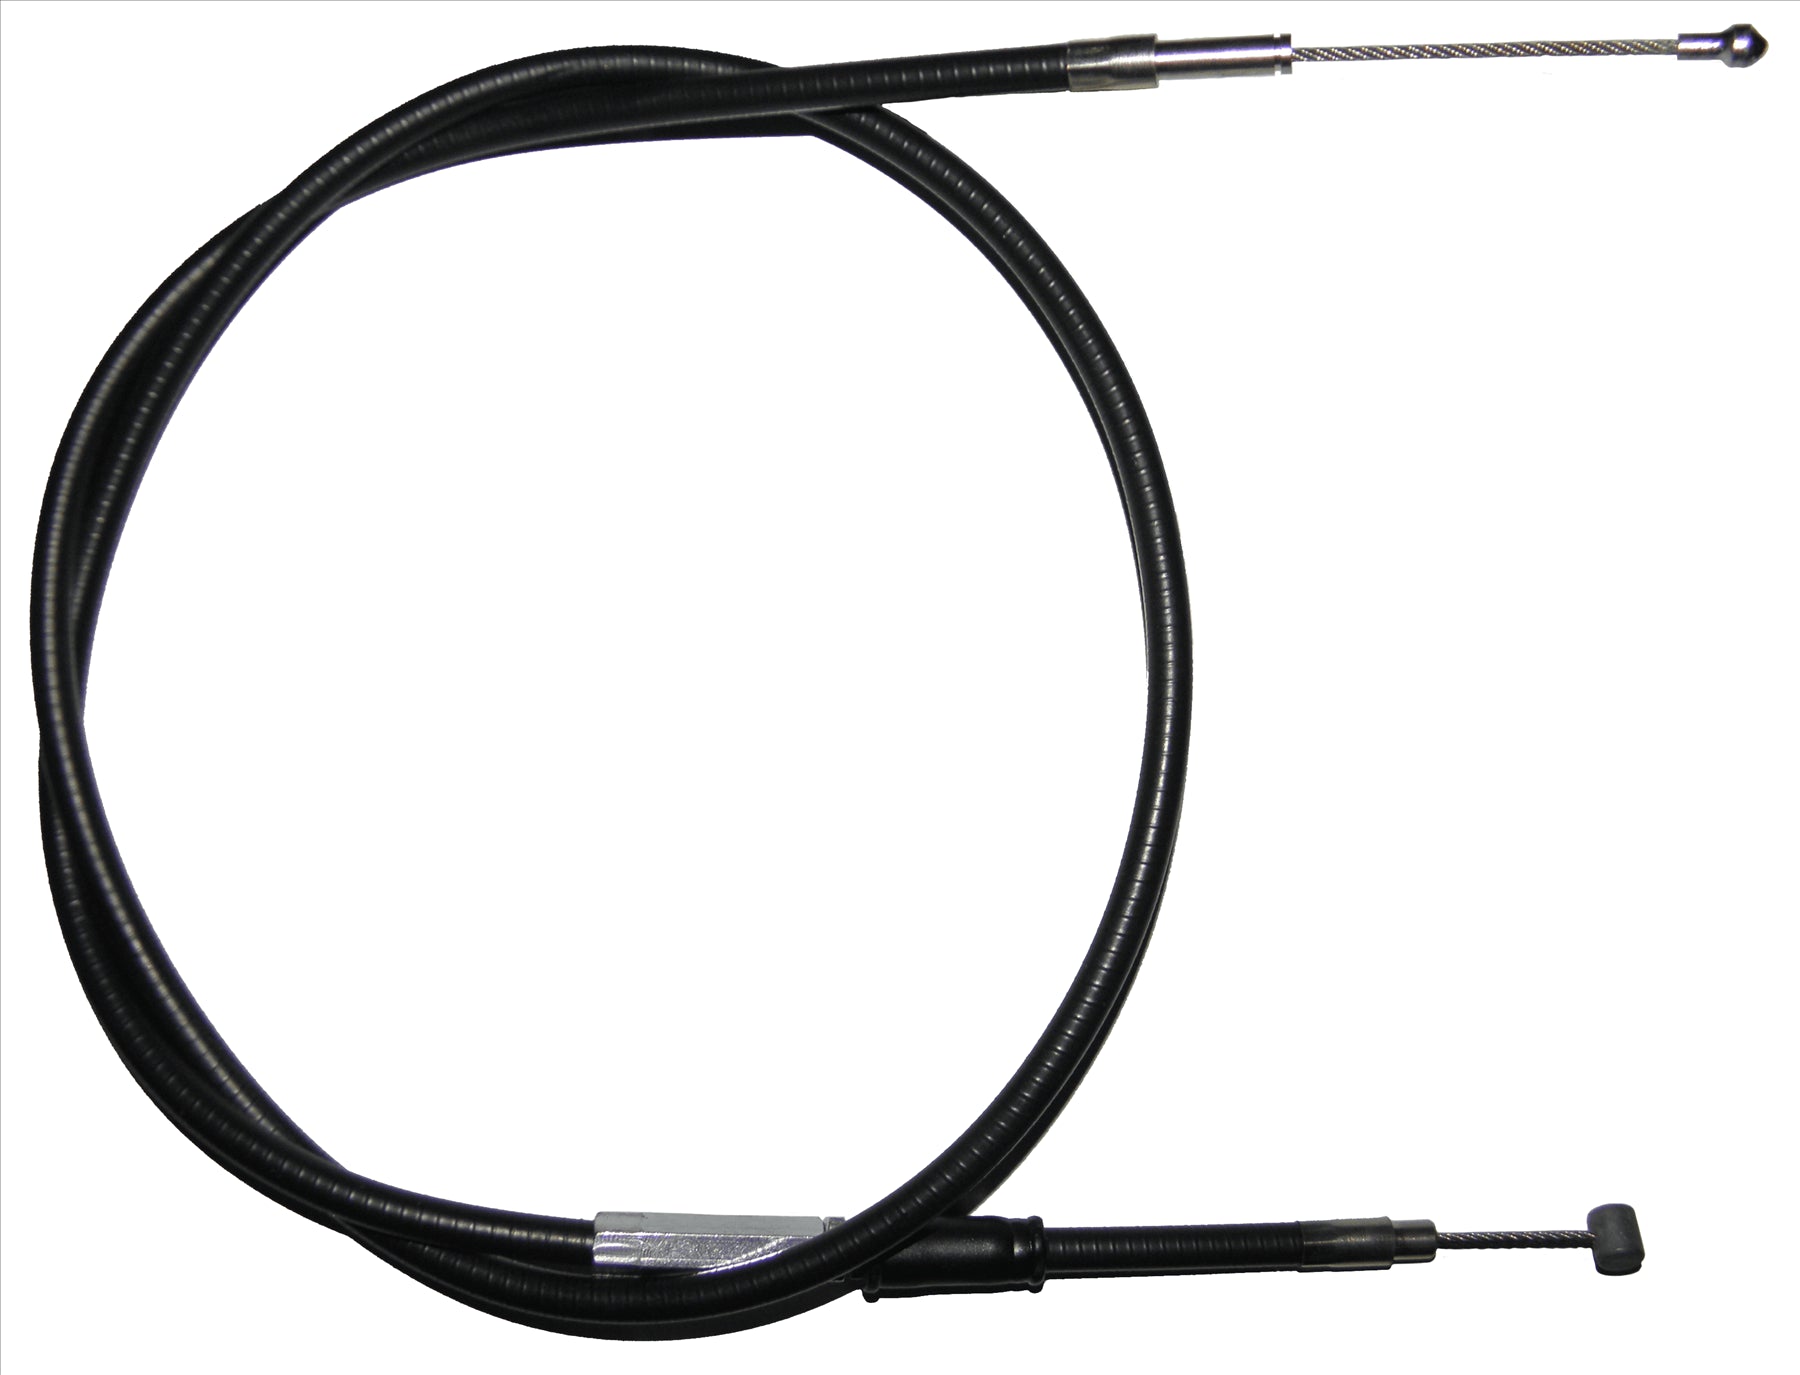 Apico Black Clutch Cable For KTM LSE 620 1997